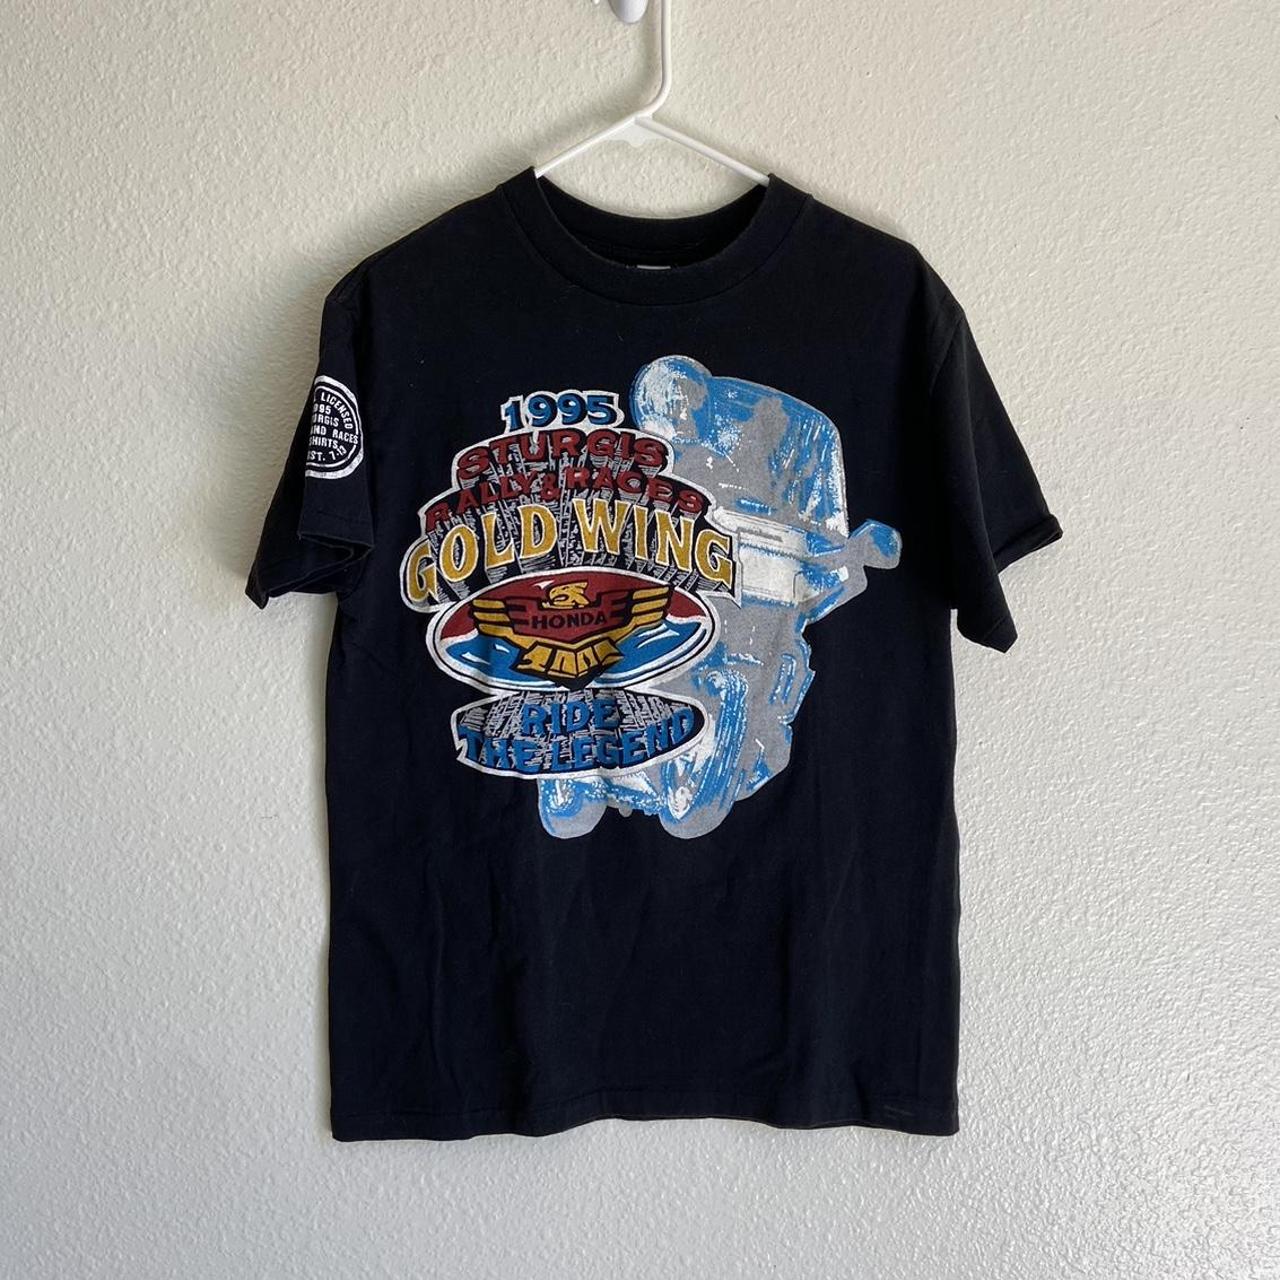 Harley Davidson Men's Black and Blue T-shirt | Depop